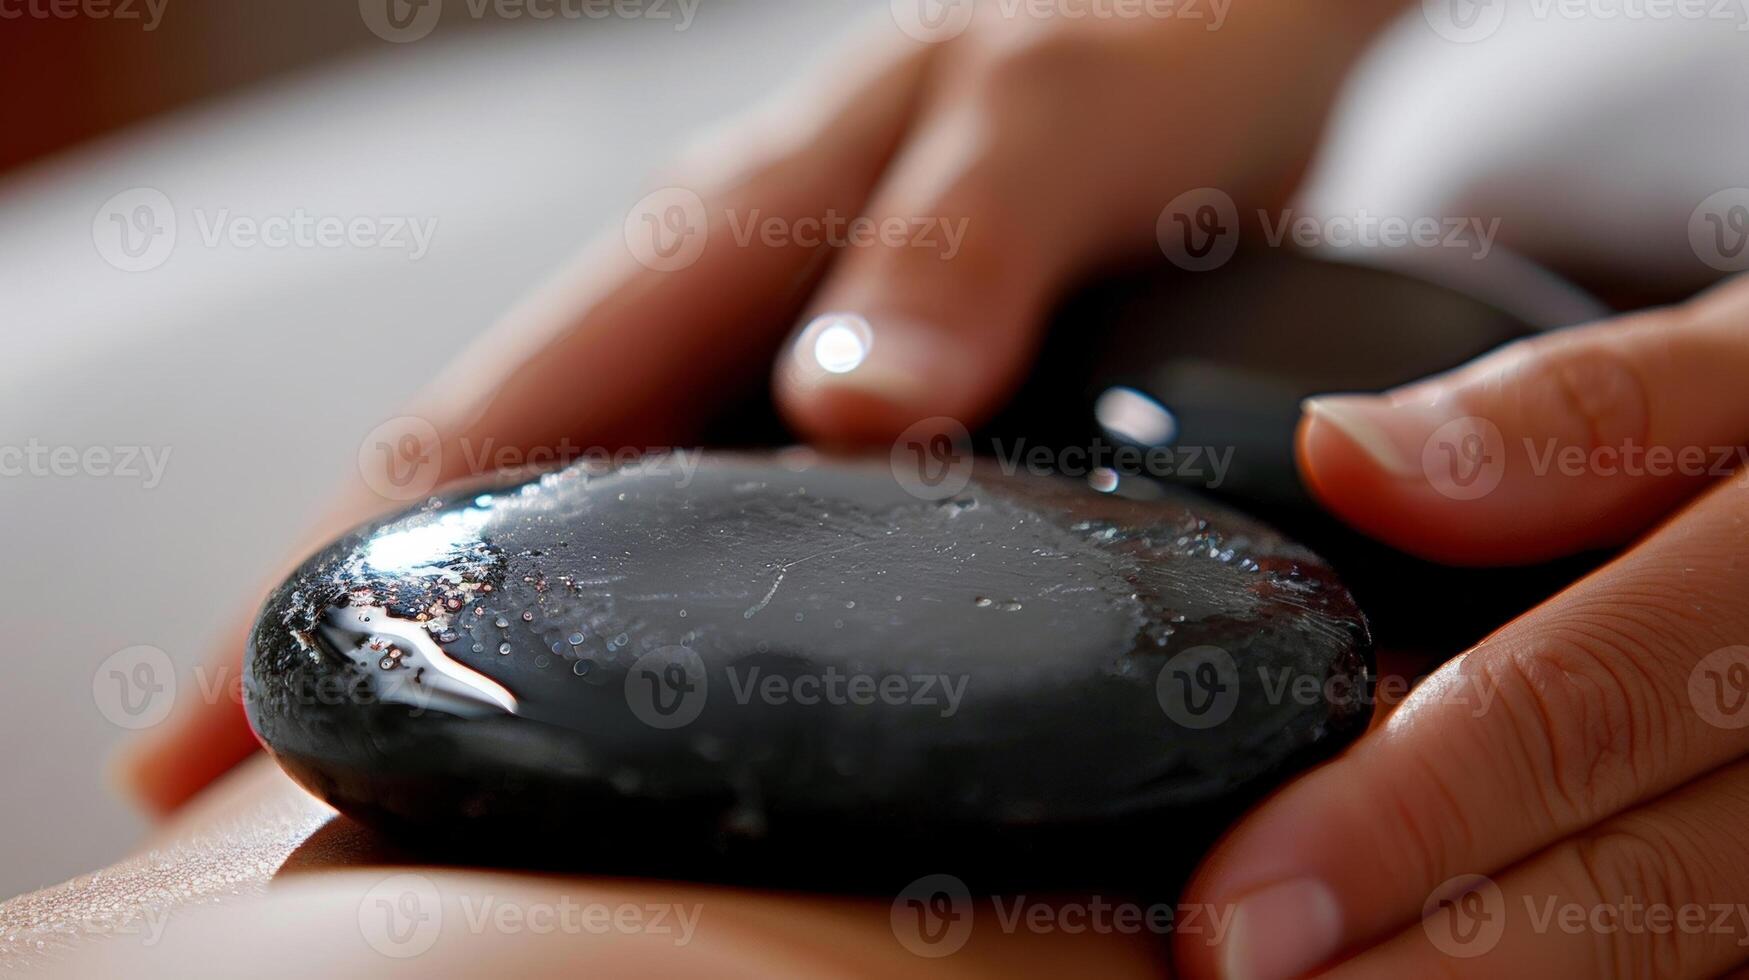 fechar-se do uma quente pedra ser usava para Aplique □ Gentil pressão em uma pessoas músculos promovendo profundo lenço de papel relaxamento. foto